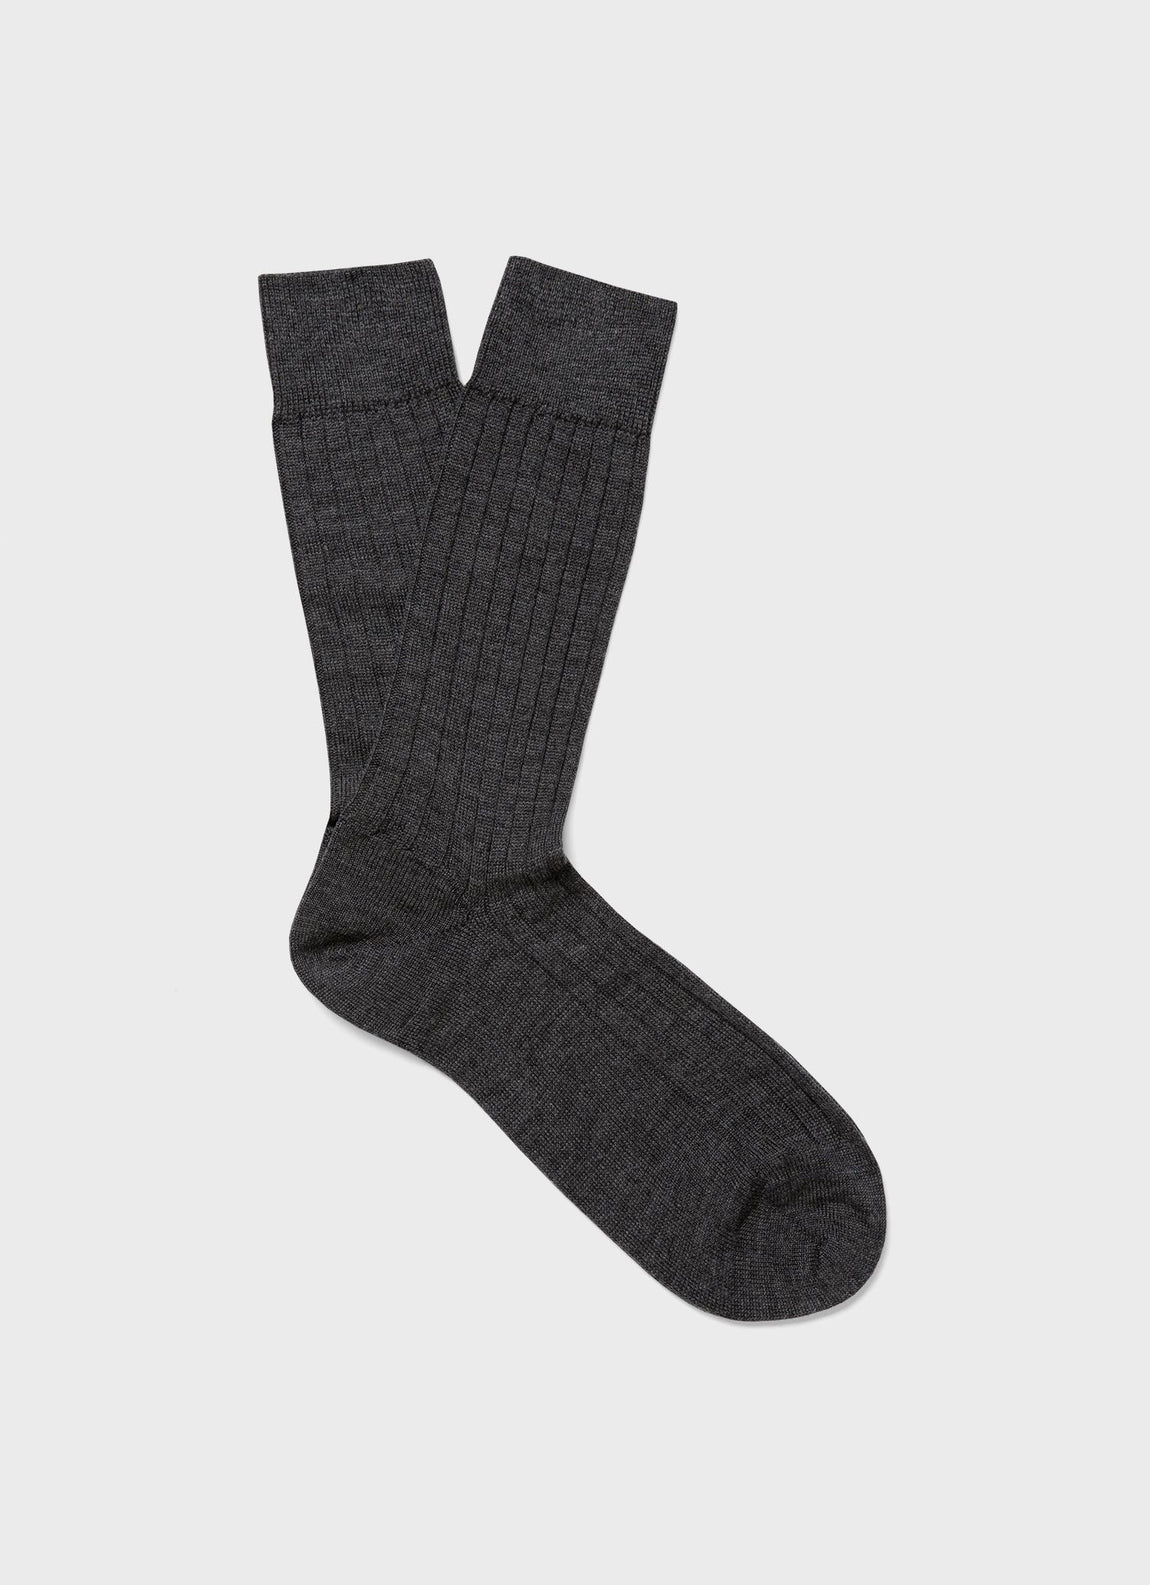 Men's Merino Wool Ribbed Socks in Charcoal Melange | Sunspel